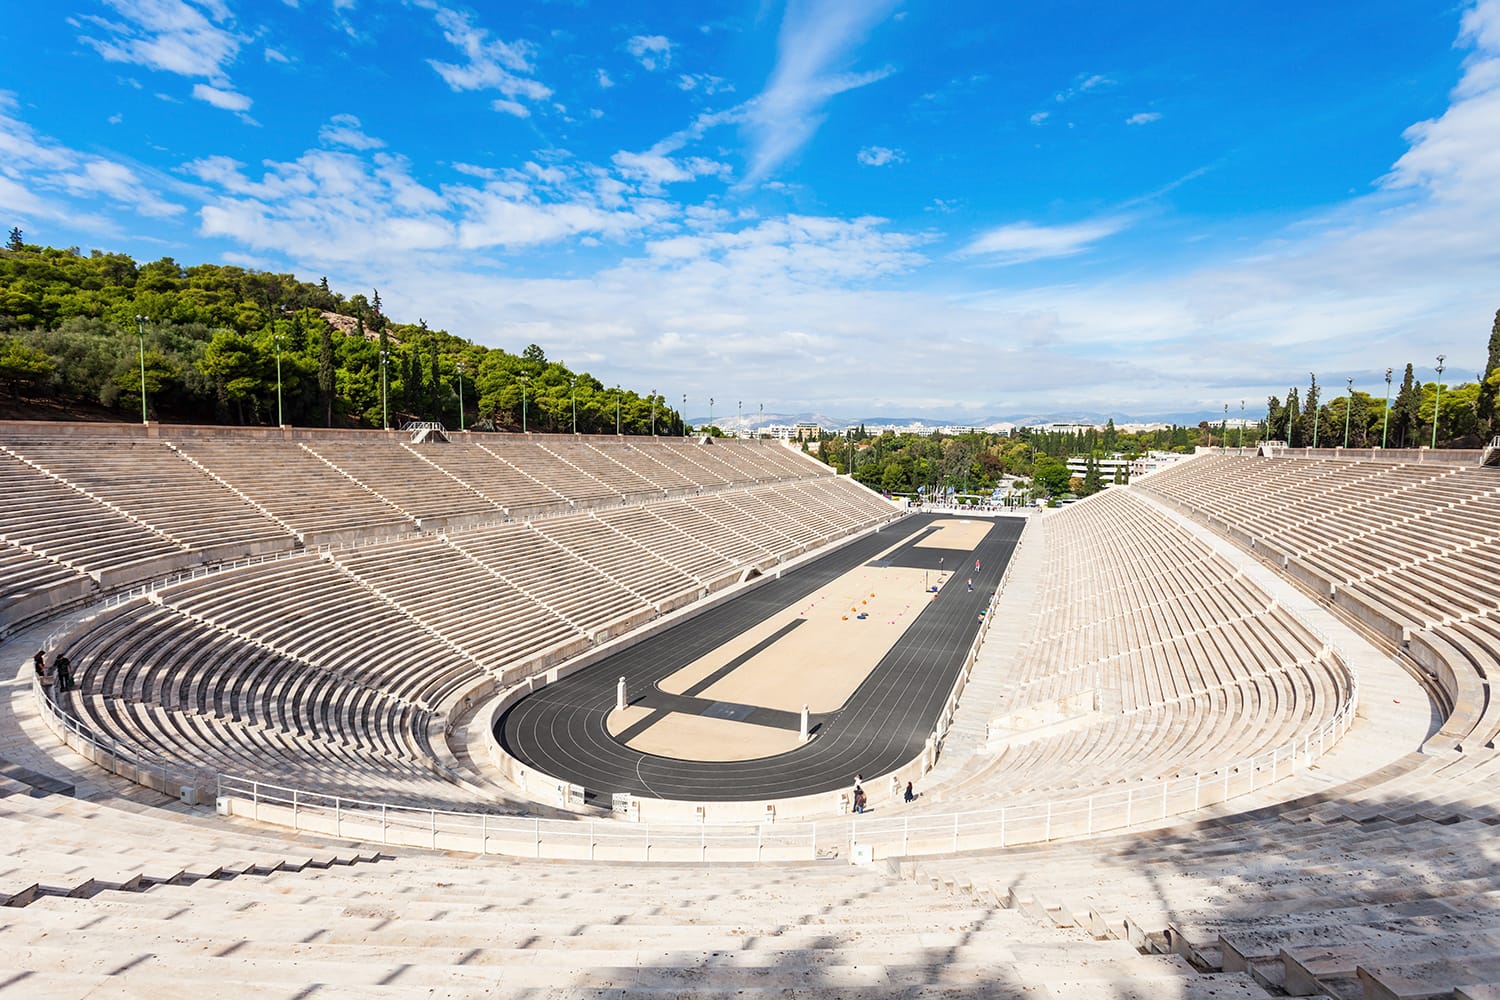 Το Παναθηναϊκό Στάδιο γνωστό και ως Καλλιμάρμαρο είναι ένα στάδιο πολλαπλών χρήσεων στην Αθήνα, Ελλάδα